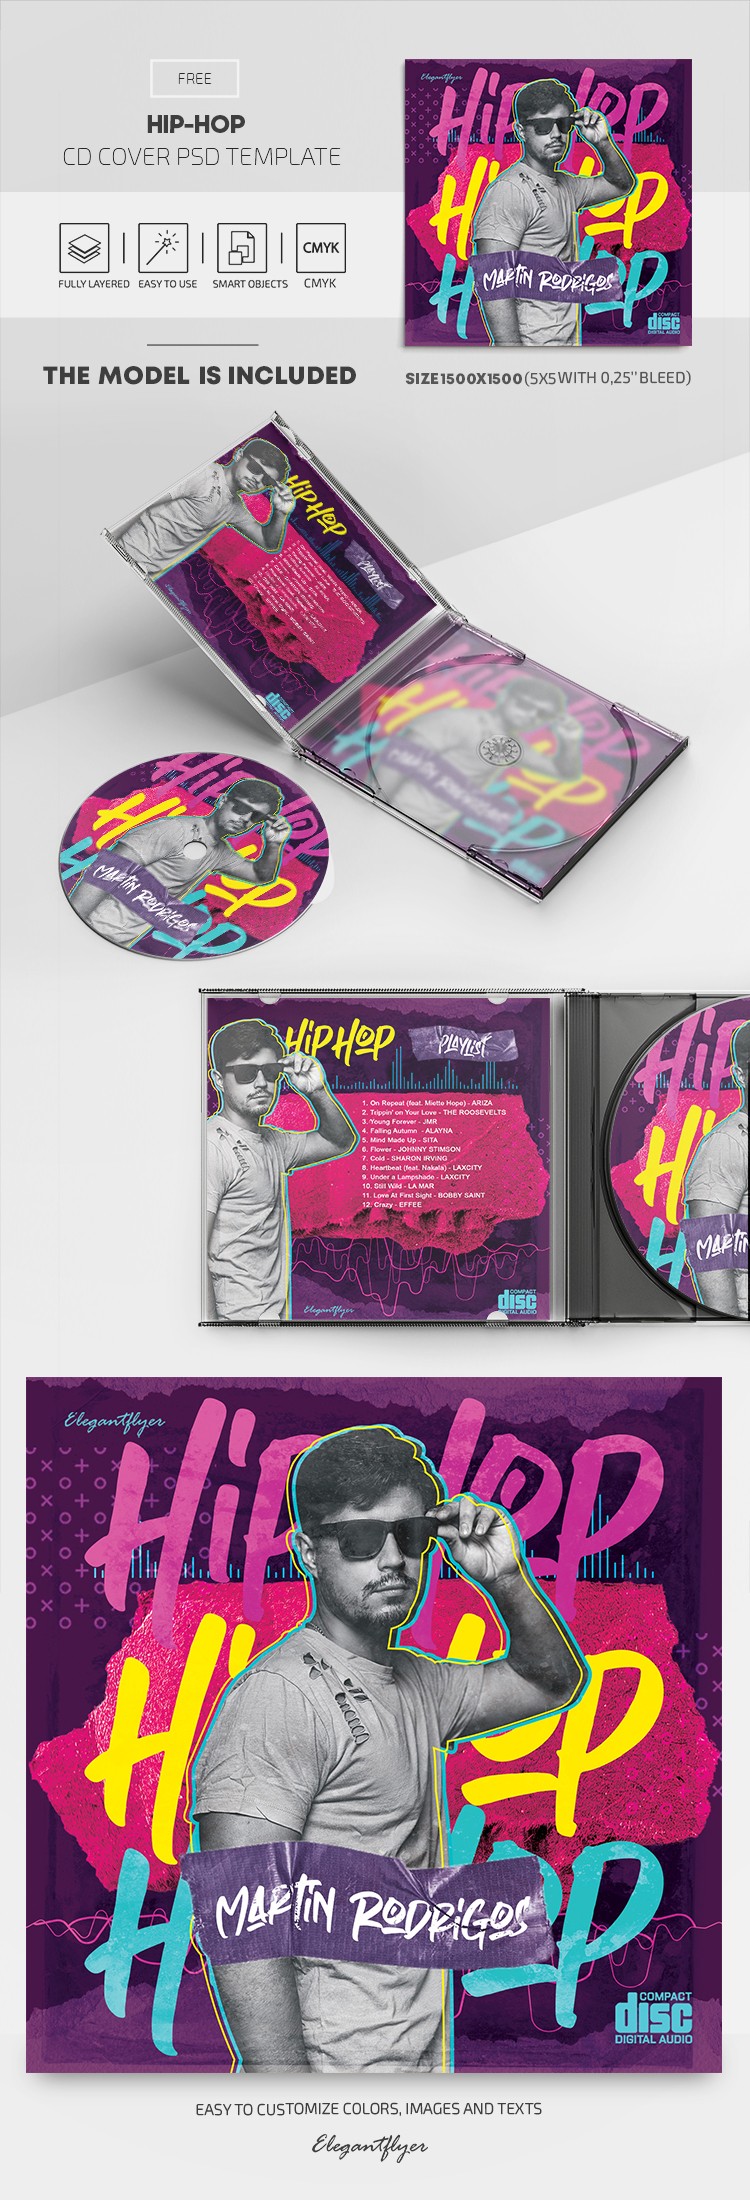 Couverture de CD Hip Hop by ElegantFlyer